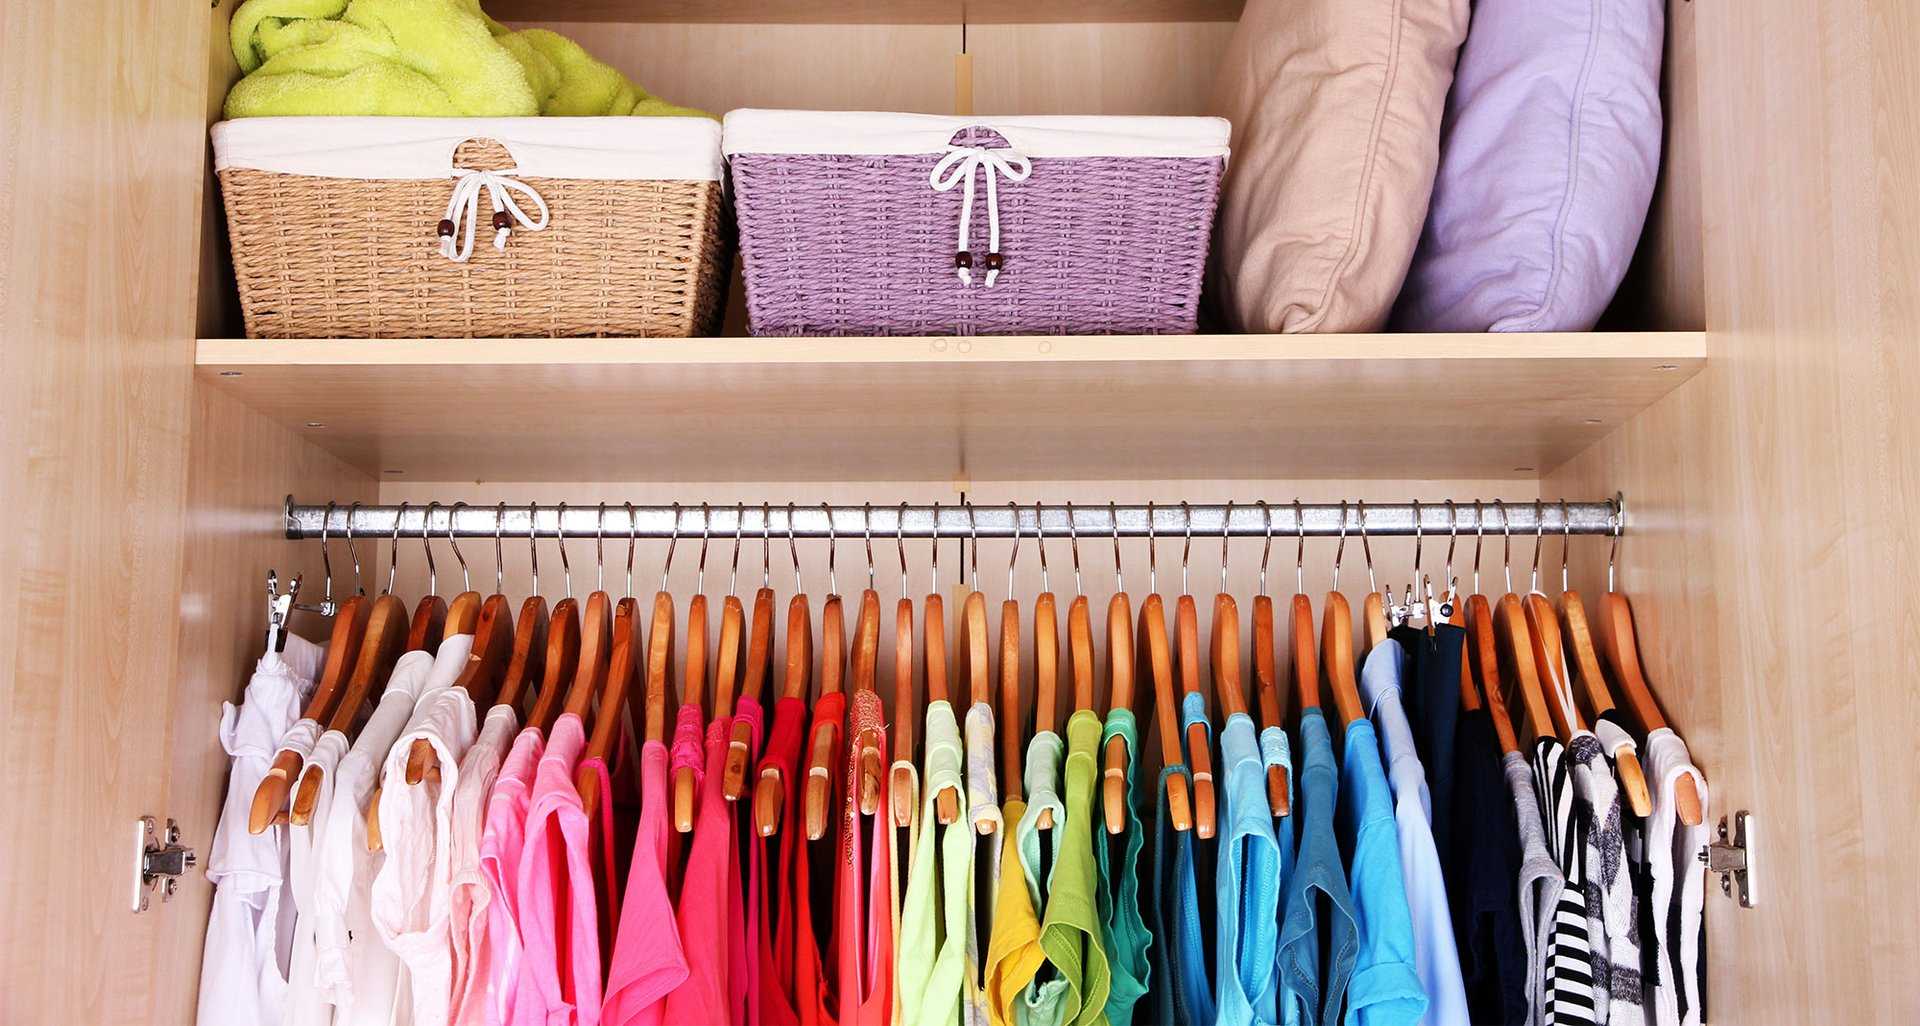 Уборка в шкафу не такое легкое занятие, как может показаться поначалу В статье расскажем, как навести порядок в шкафу с одеждой, и поделимся лайфхаками